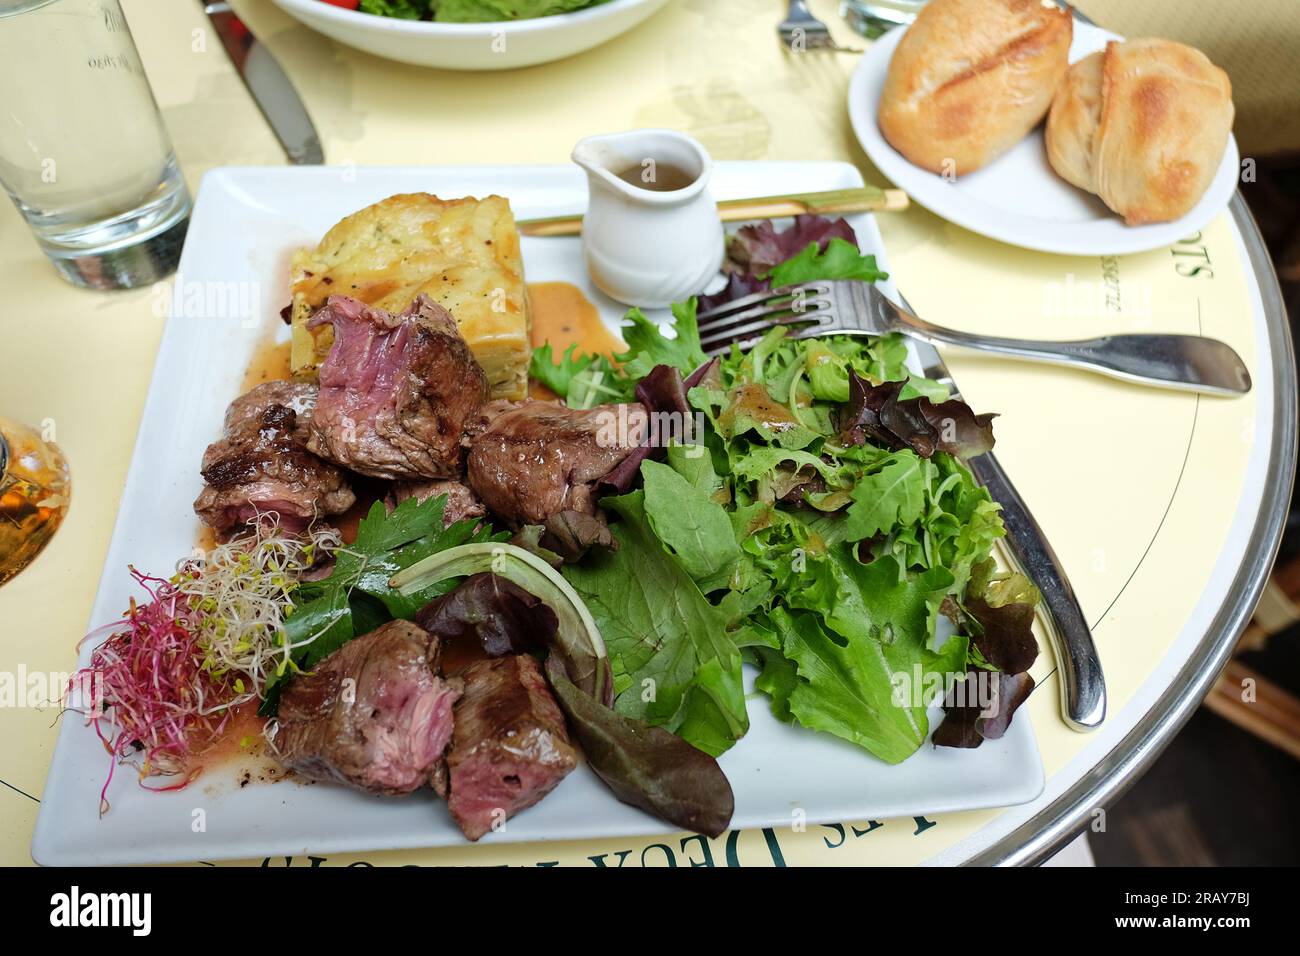 Déjeuner sur la rive gauche au kebab de bœuf de style deux Magots sur la terrasse extérieure des deux Magots, Saint-Germain des Prés, Paris, France Banque D'Images